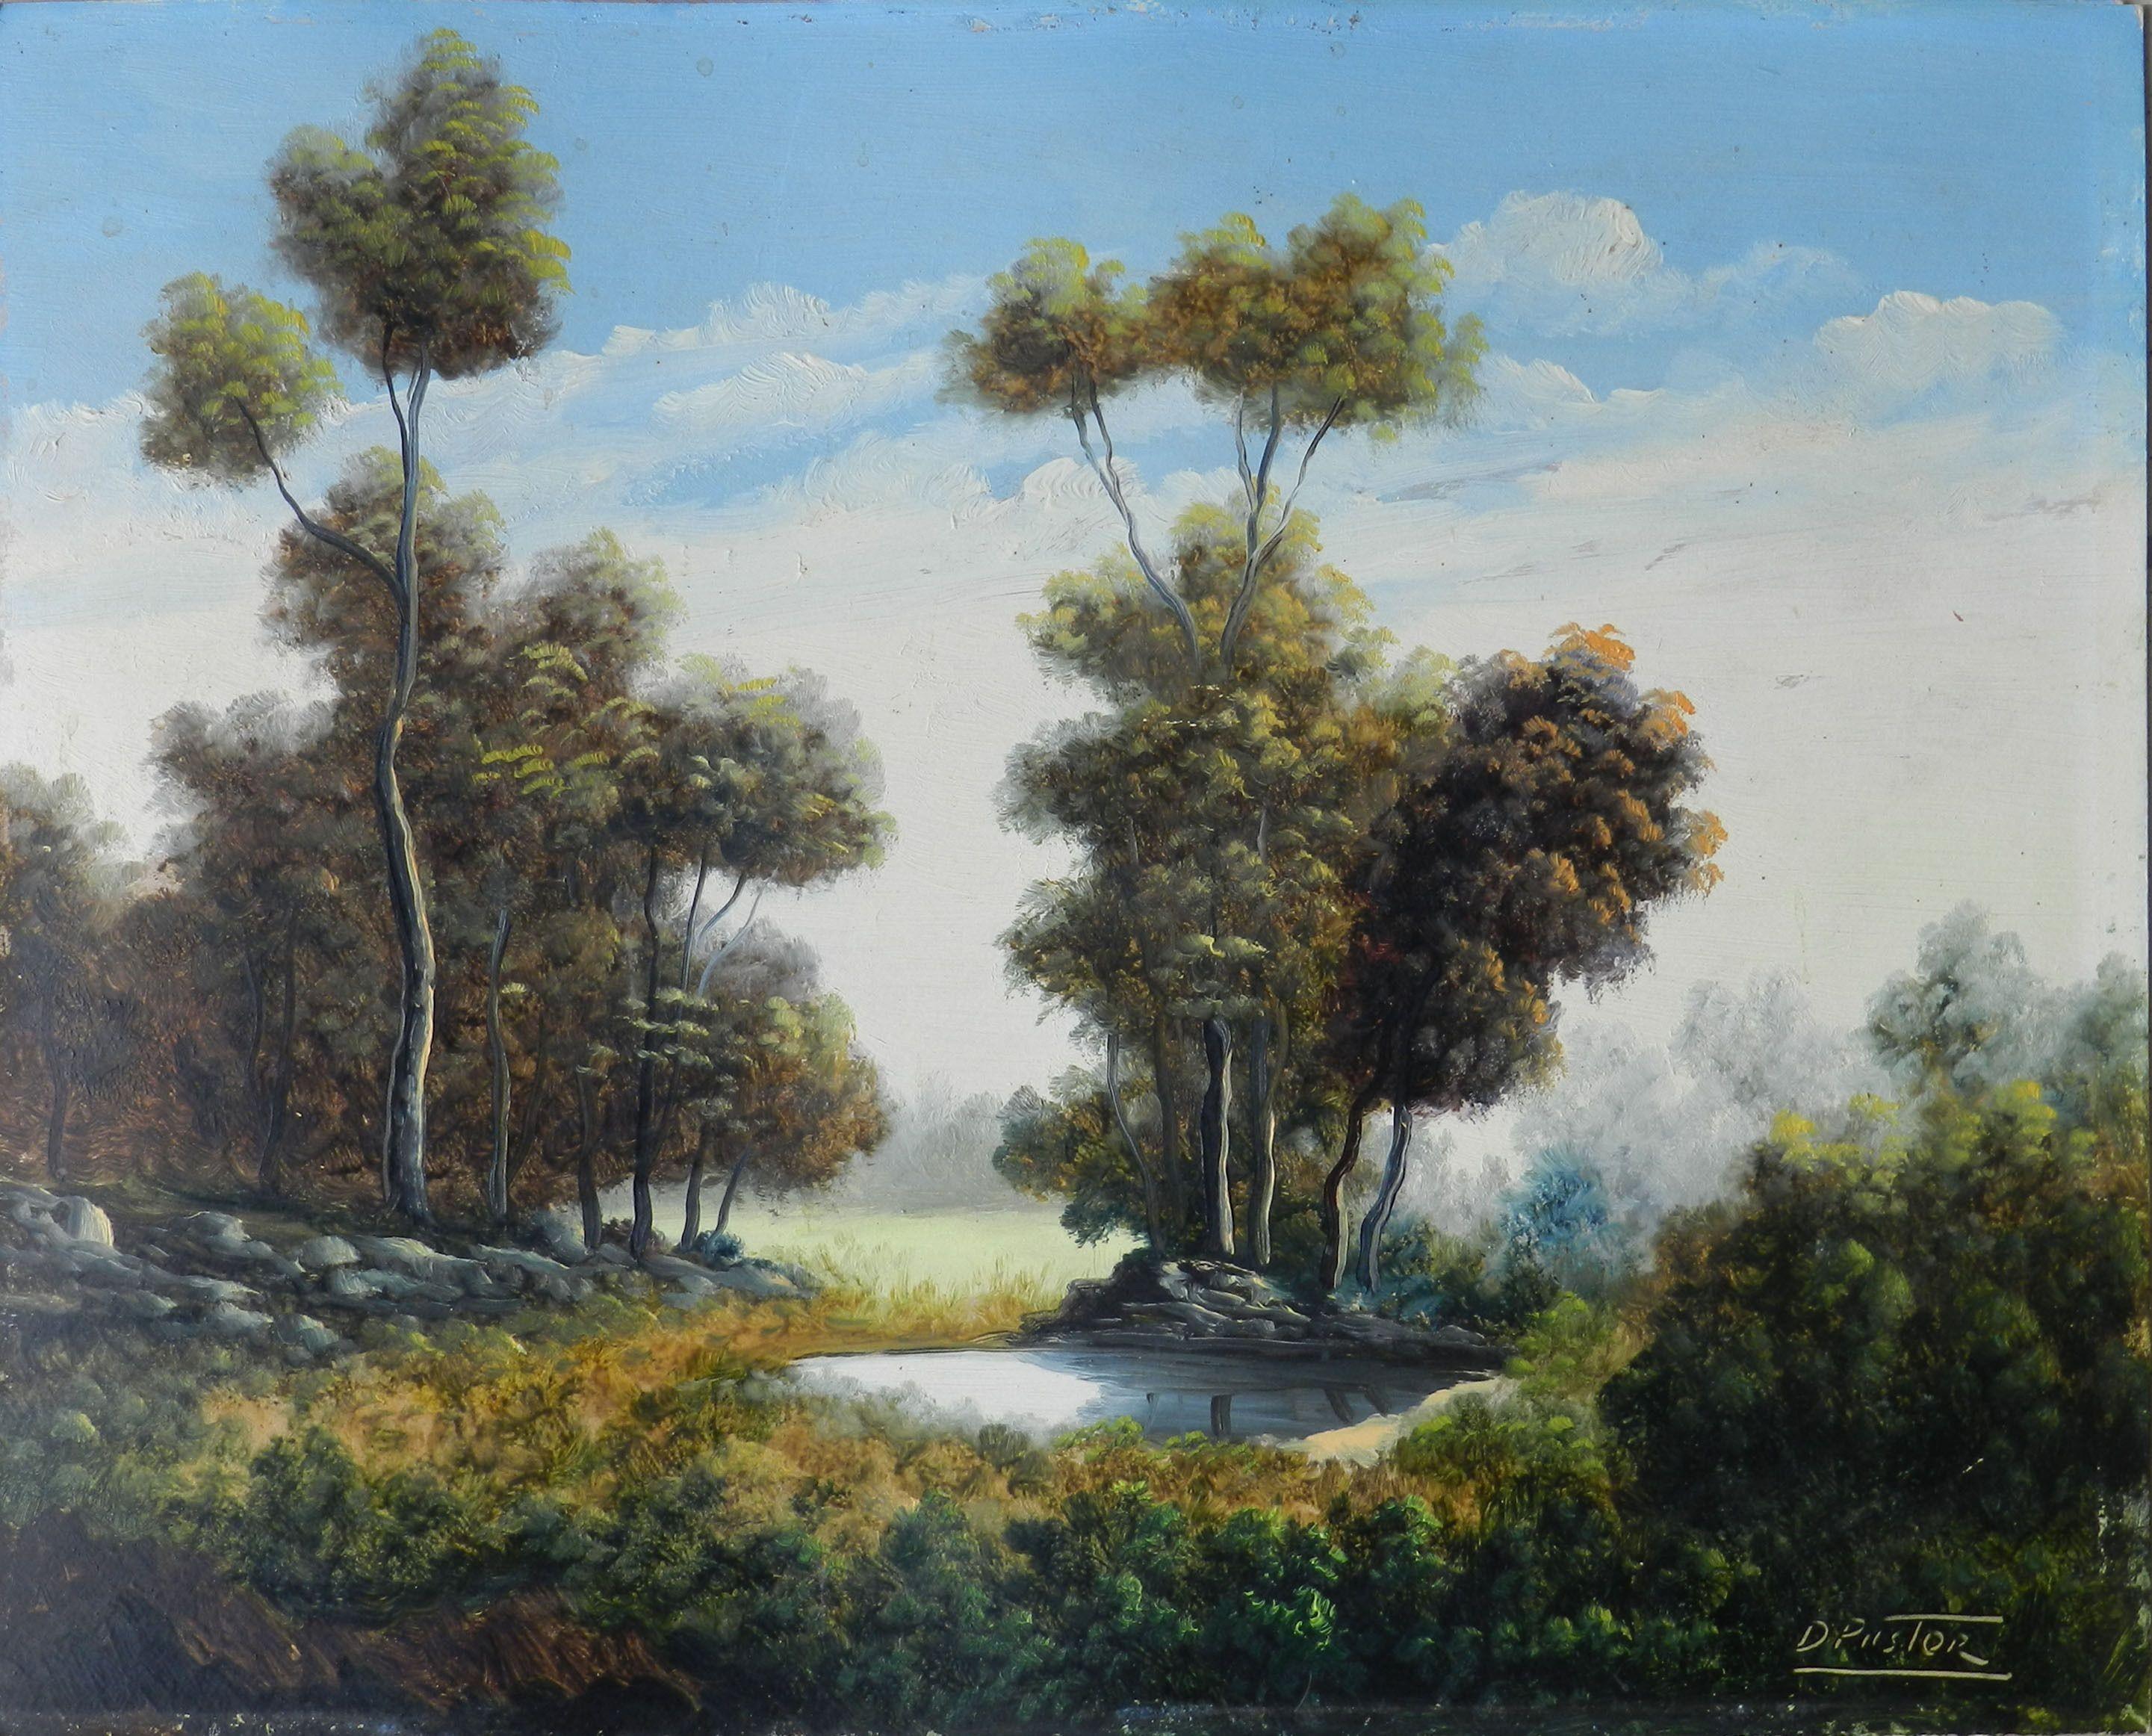 Landscape Painting Unknown - Paysage de lac par Daniel Pastor, peintre espagnol, vers 1930-40